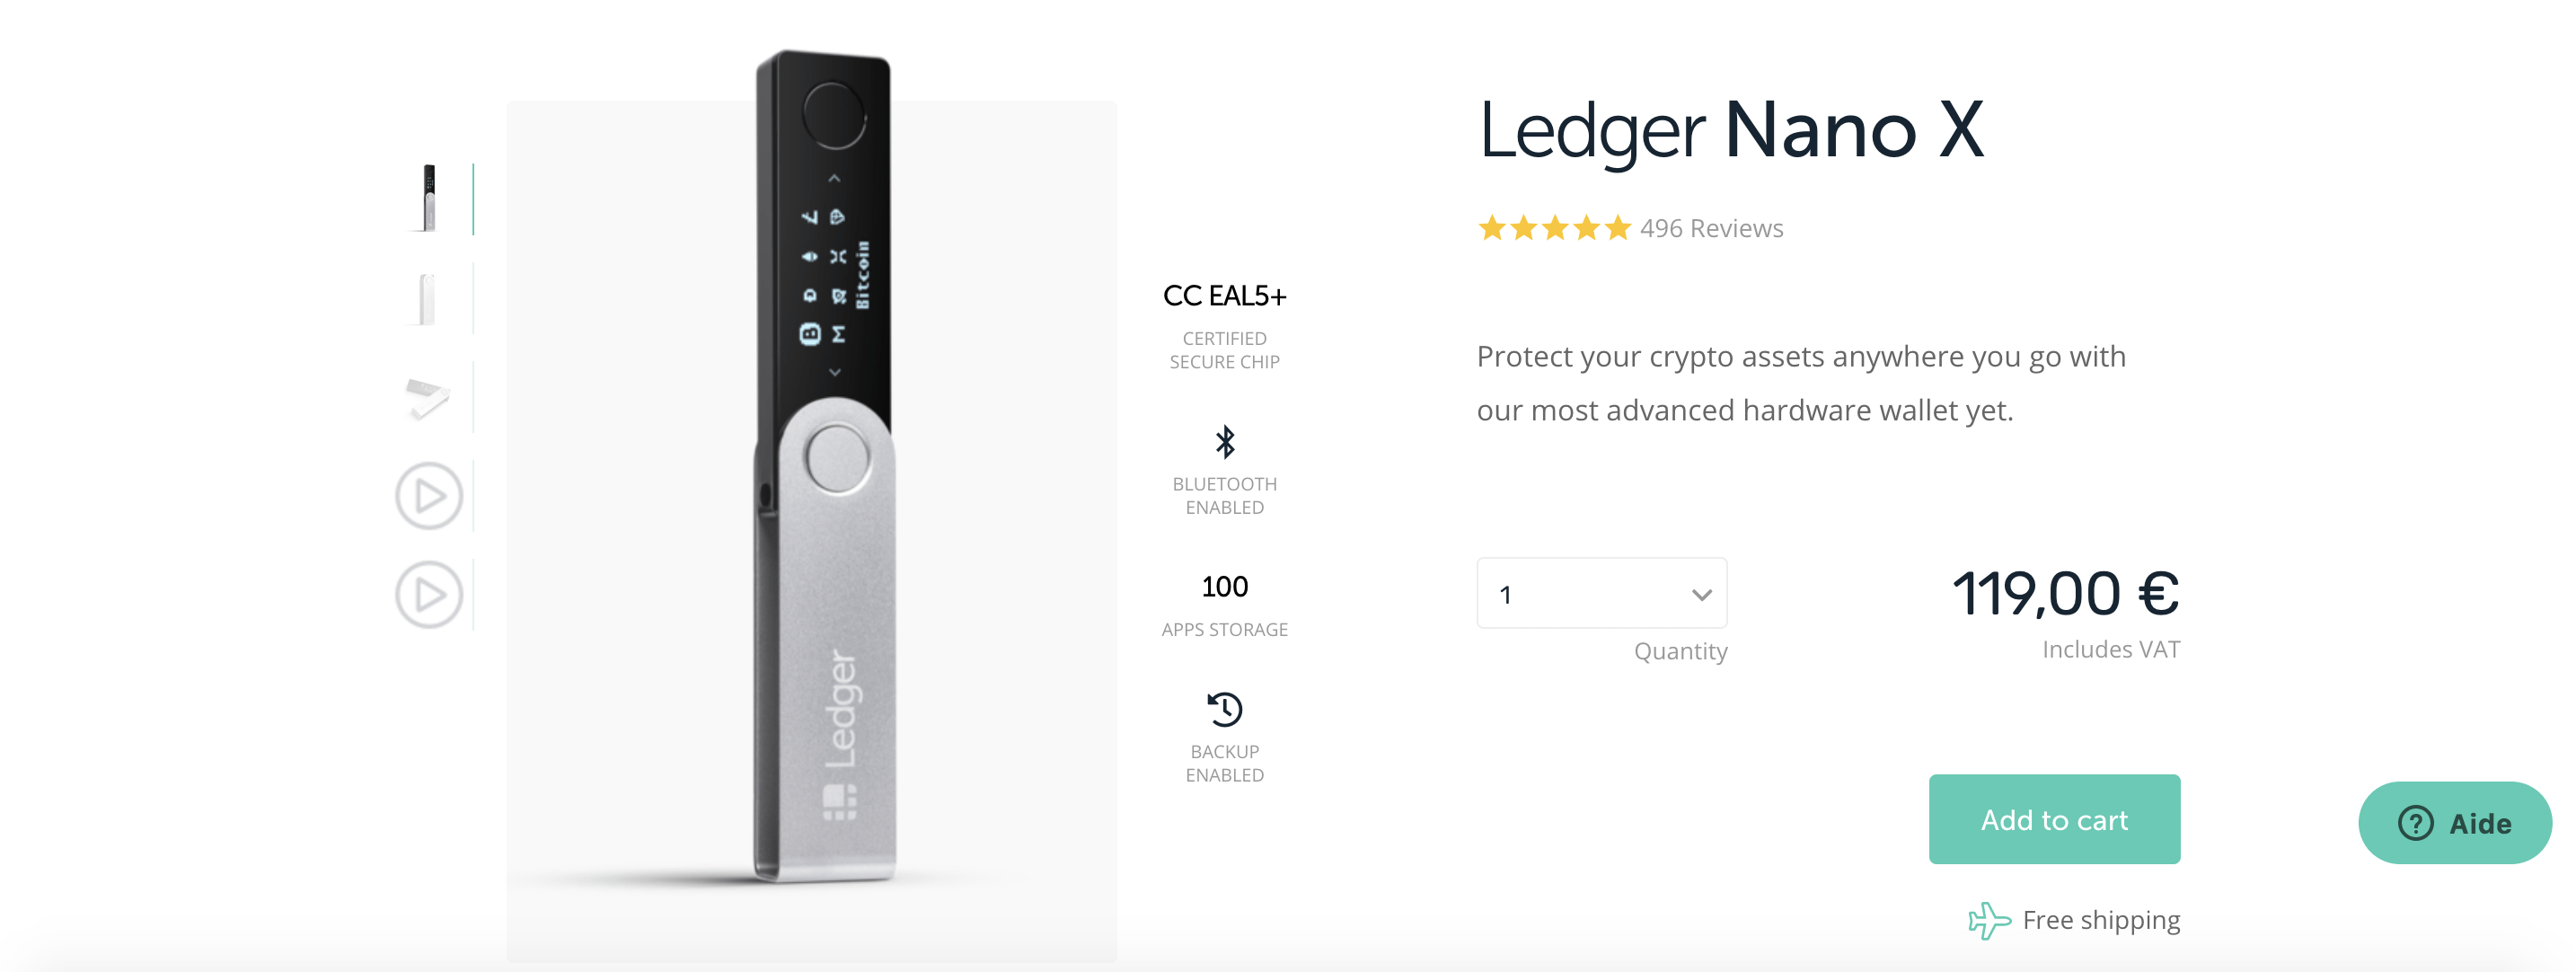 La page de présentation du Ledger Nano X sur le site officiel de l'entreprise.